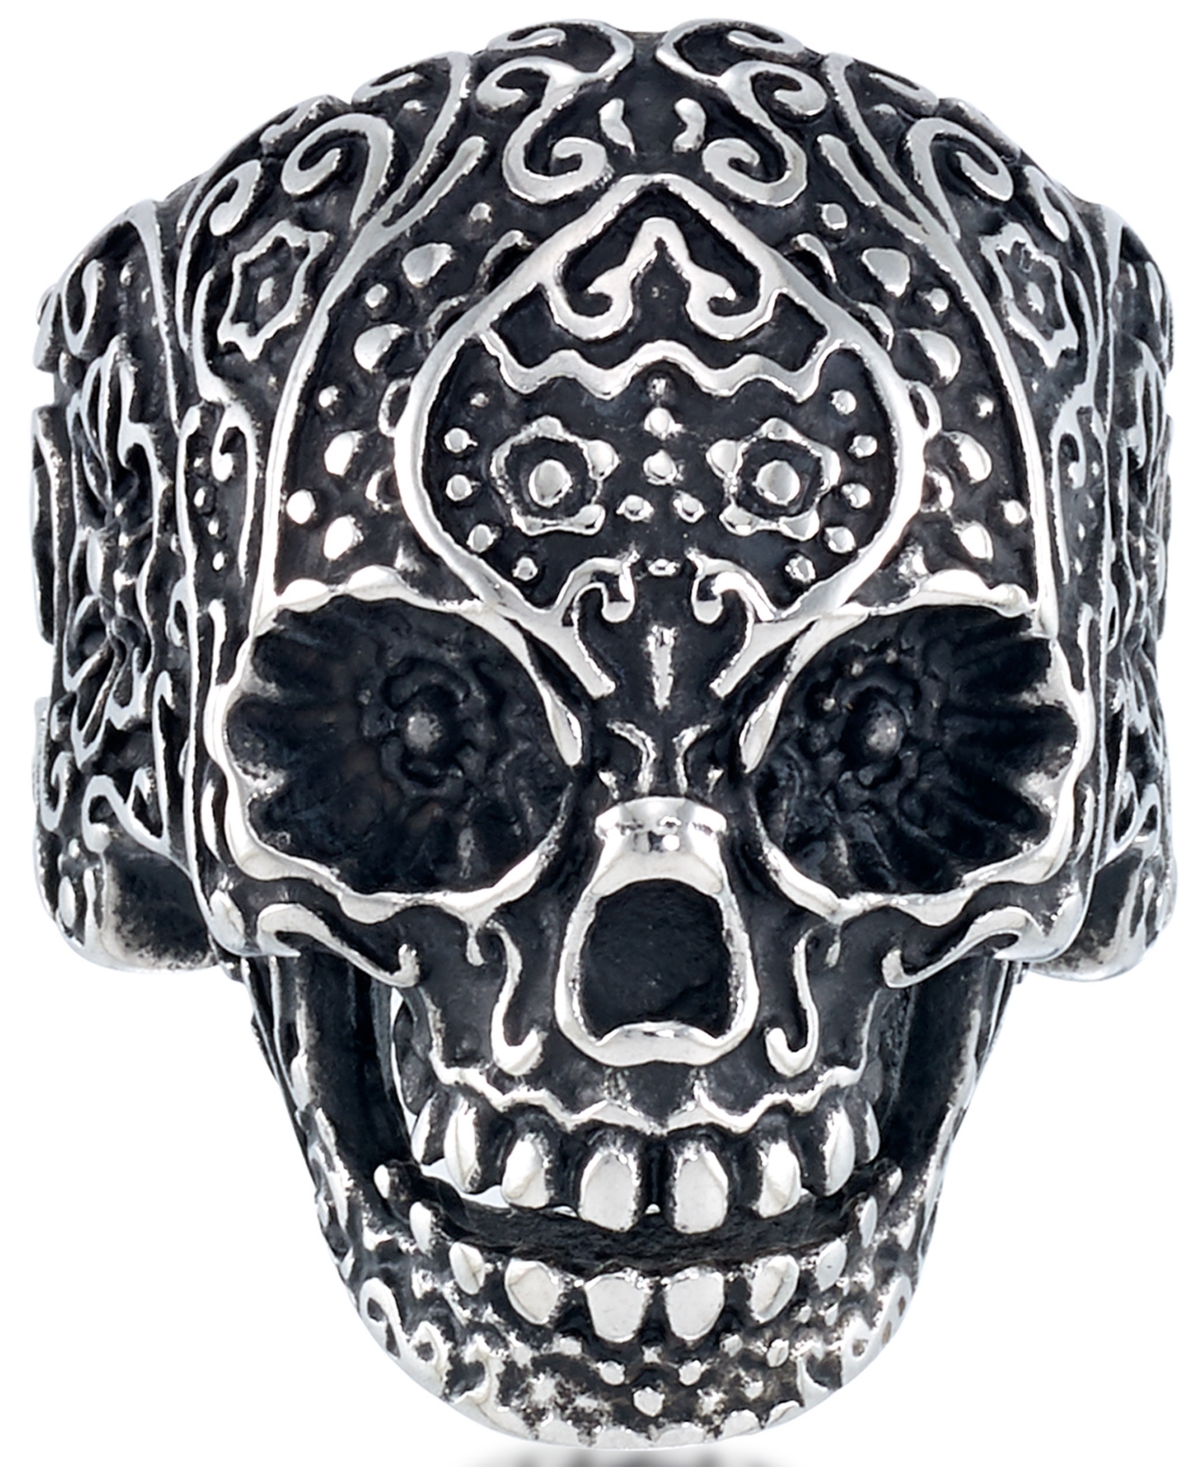 Men's Ornamental Skull Ring in Oxidized Stainless Steel - Stainless Steel